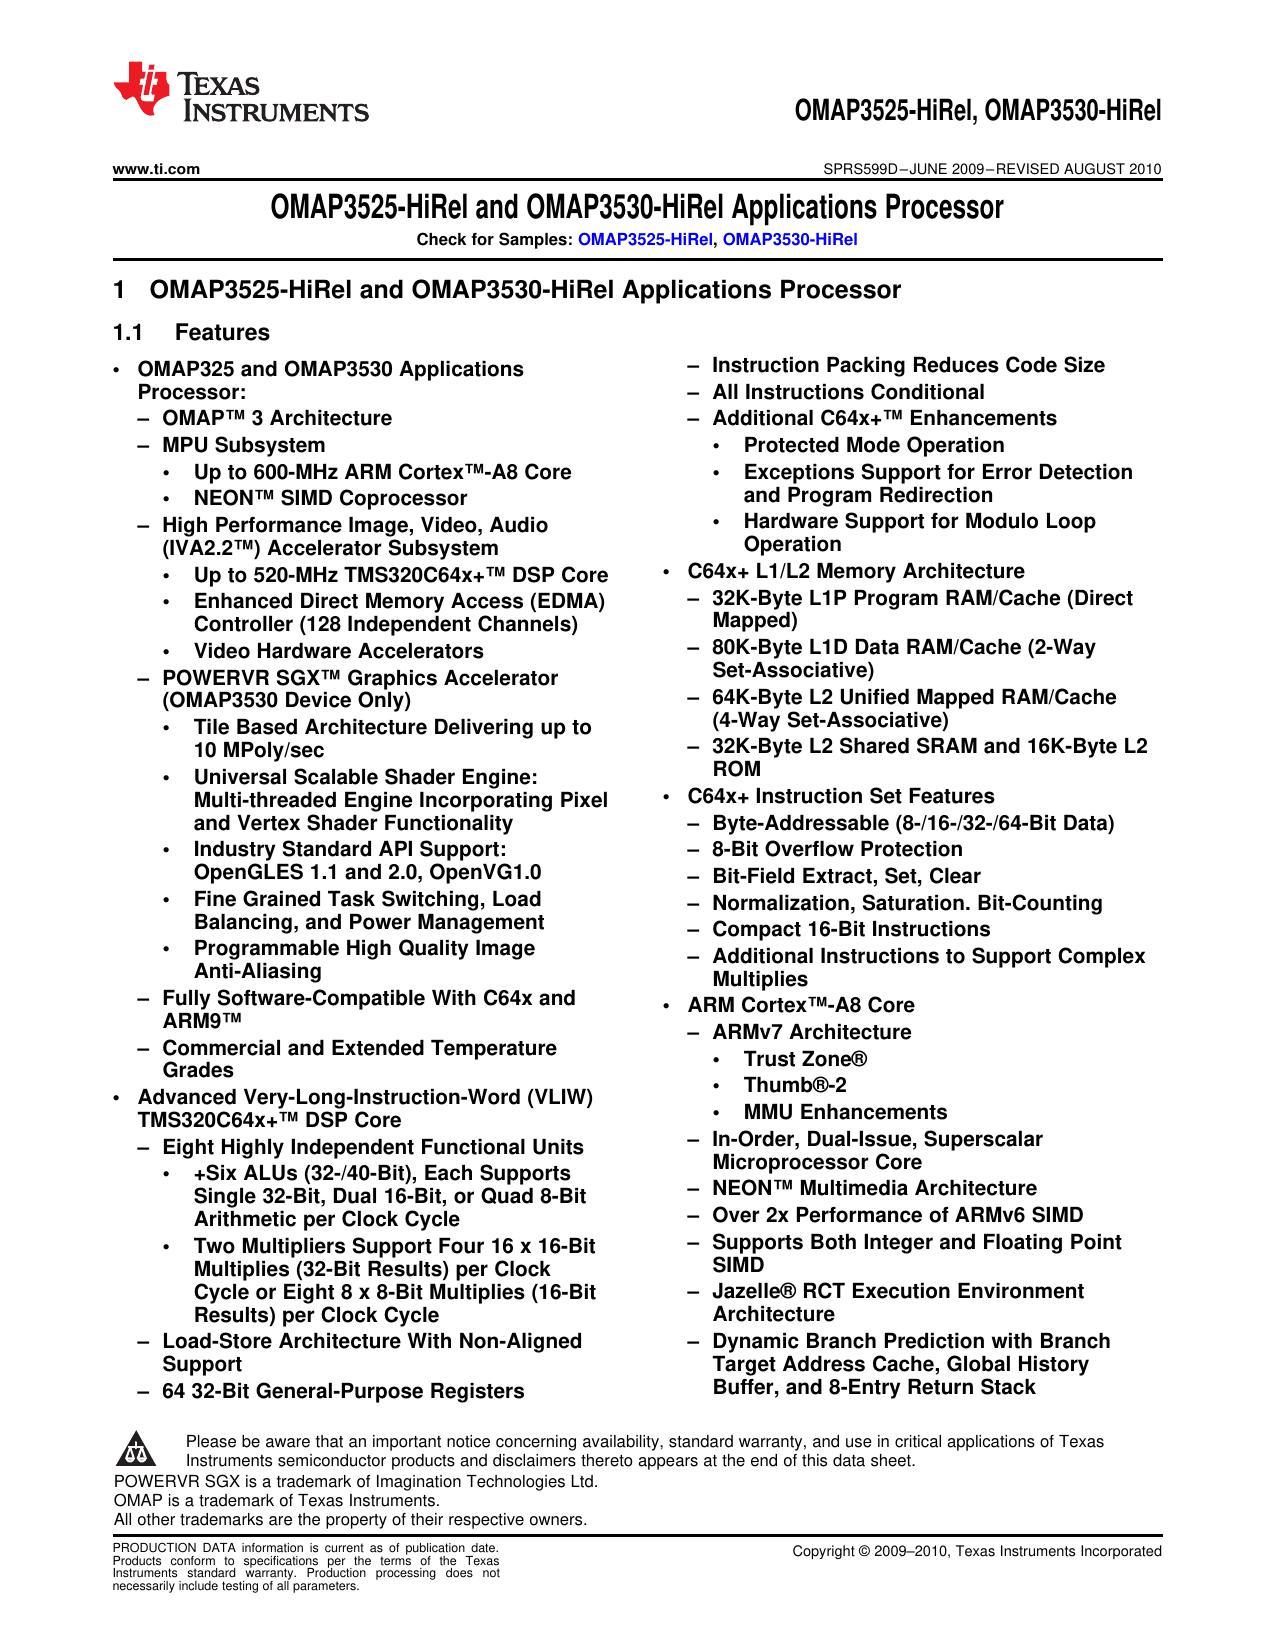 omap3525-hirel-and-omap3530-hirel-applications-processor.pdf